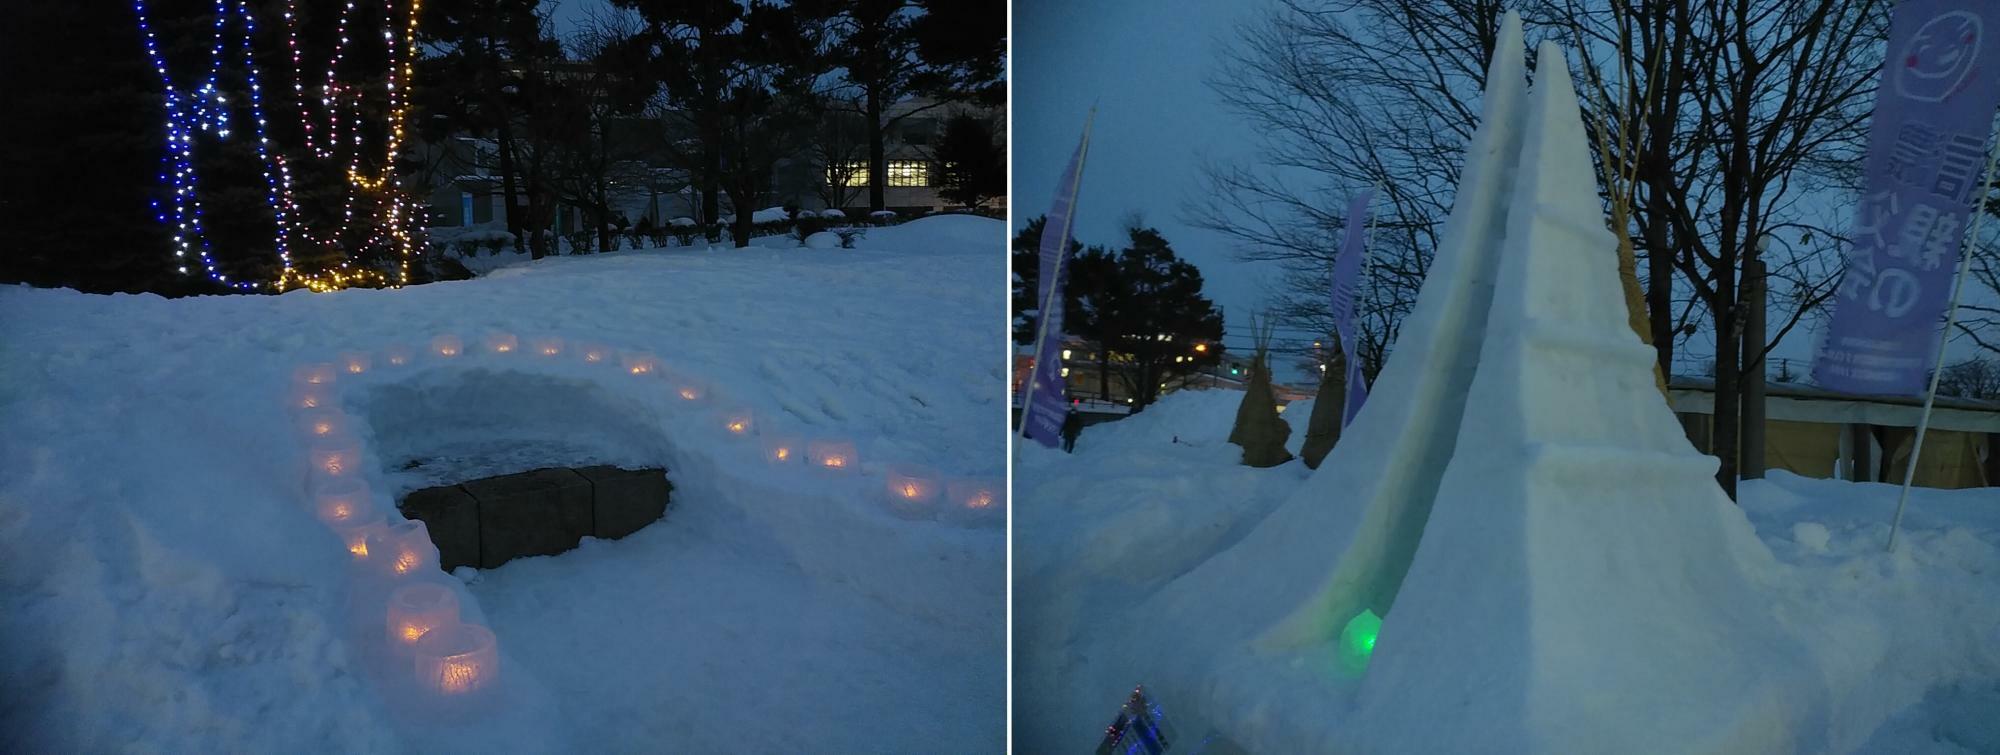 スノーキャンドルが点灯している写真は昨年の新さっぽろ冬まつりで撮影した写真です